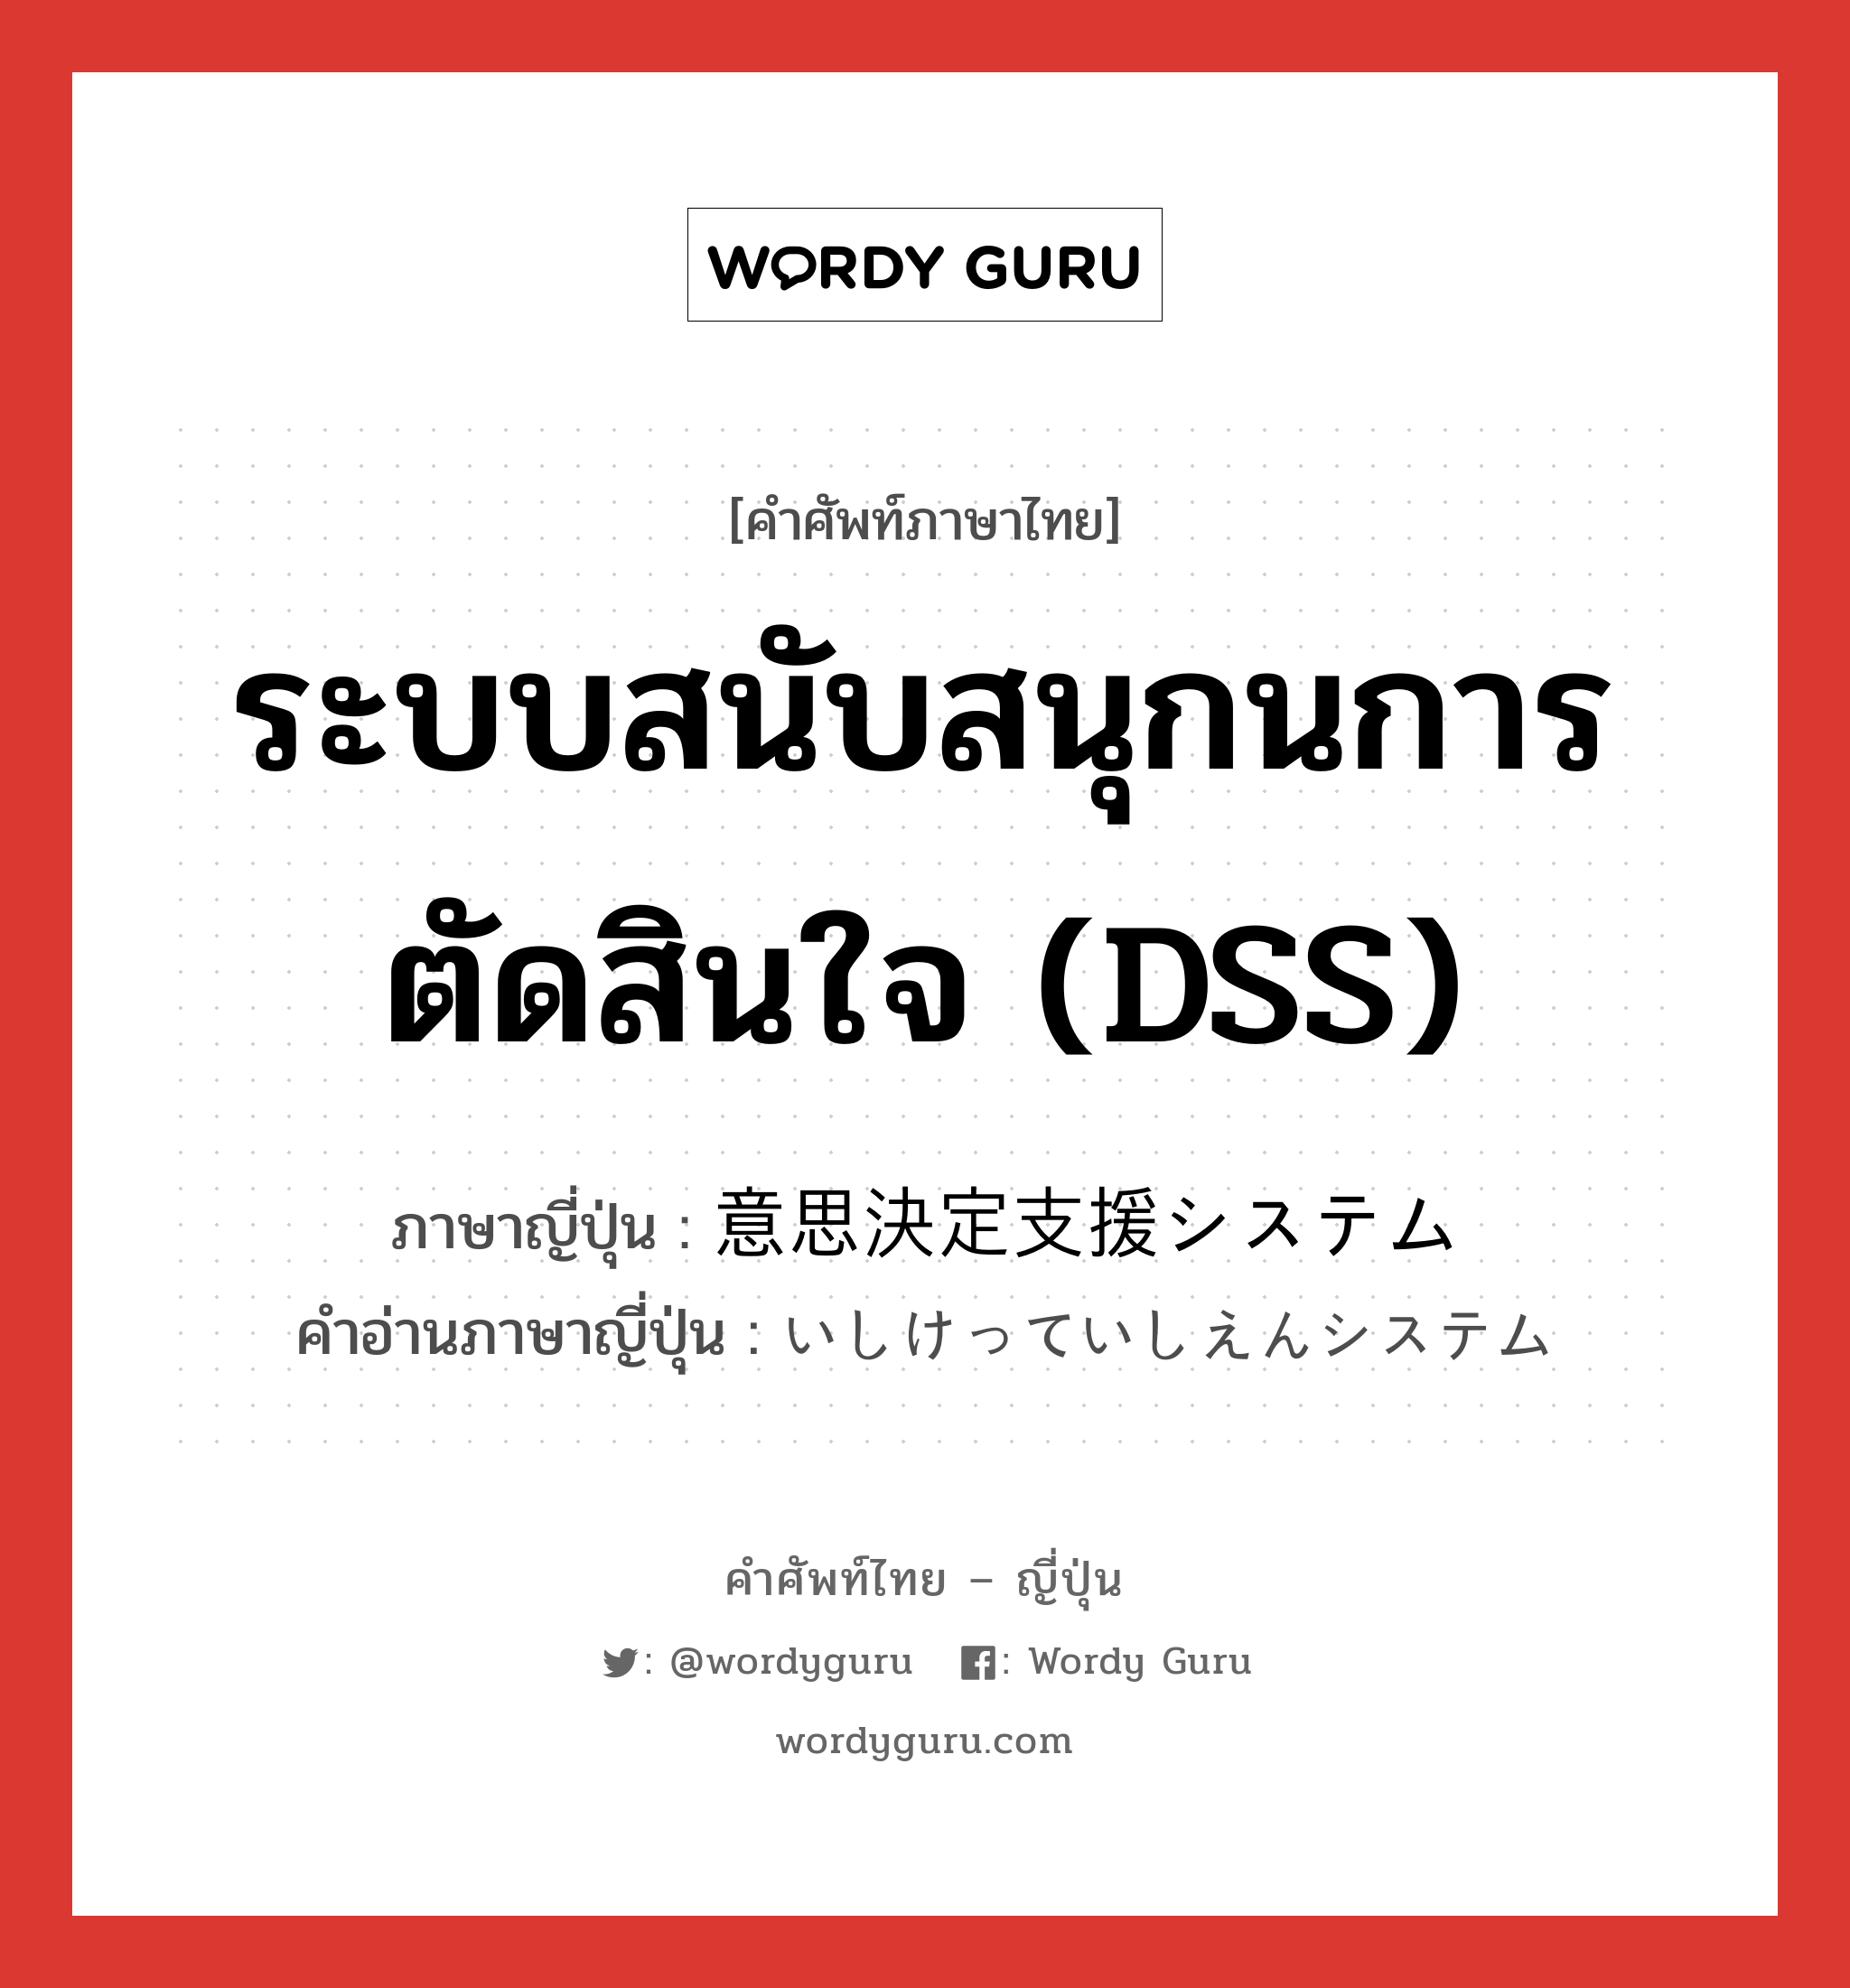 ระบบสนับสนุกนการตัดสินใจ (DSS) ภาษาญี่ปุ่นคืออะไร, คำศัพท์ภาษาไทย - ญี่ปุ่น ระบบสนับสนุกนการตัดสินใจ (DSS) ภาษาญี่ปุ่น 意思決定支援システム คำอ่านภาษาญี่ปุ่น いしけっていしえんシステム หมวด n หมวด n